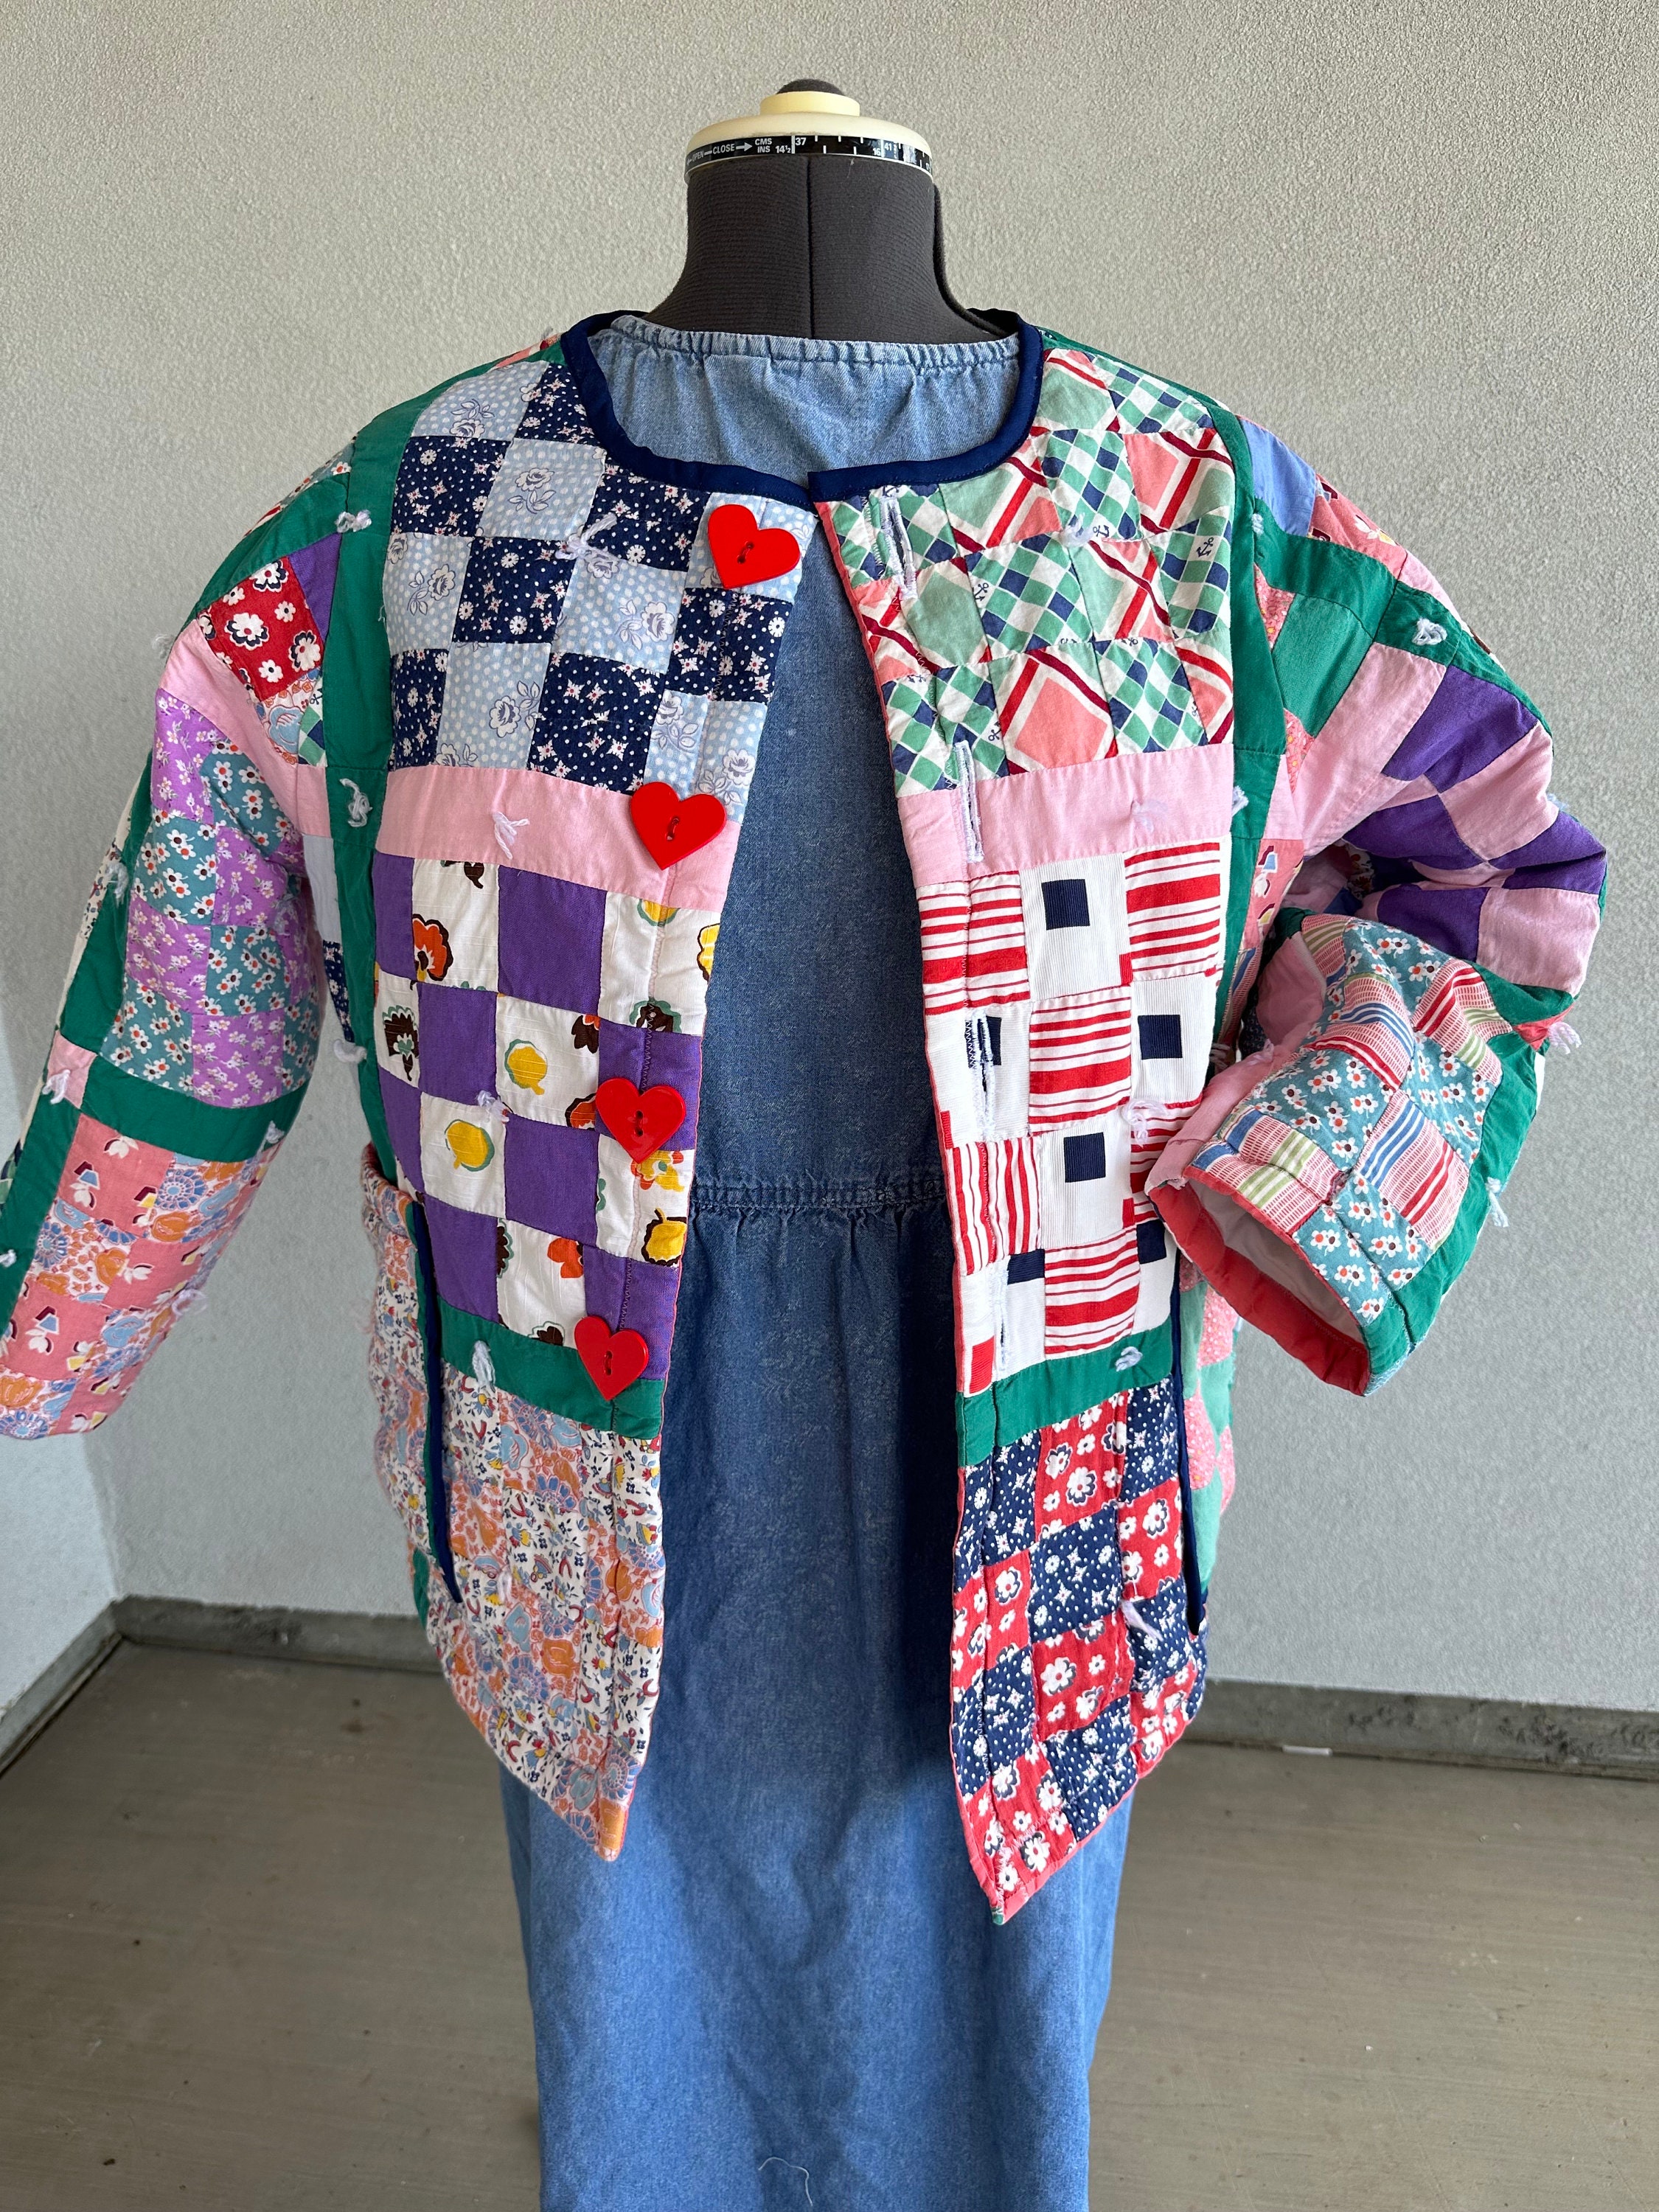 Colorful Fun Vintage Quilt Shop Coat. - Etsy